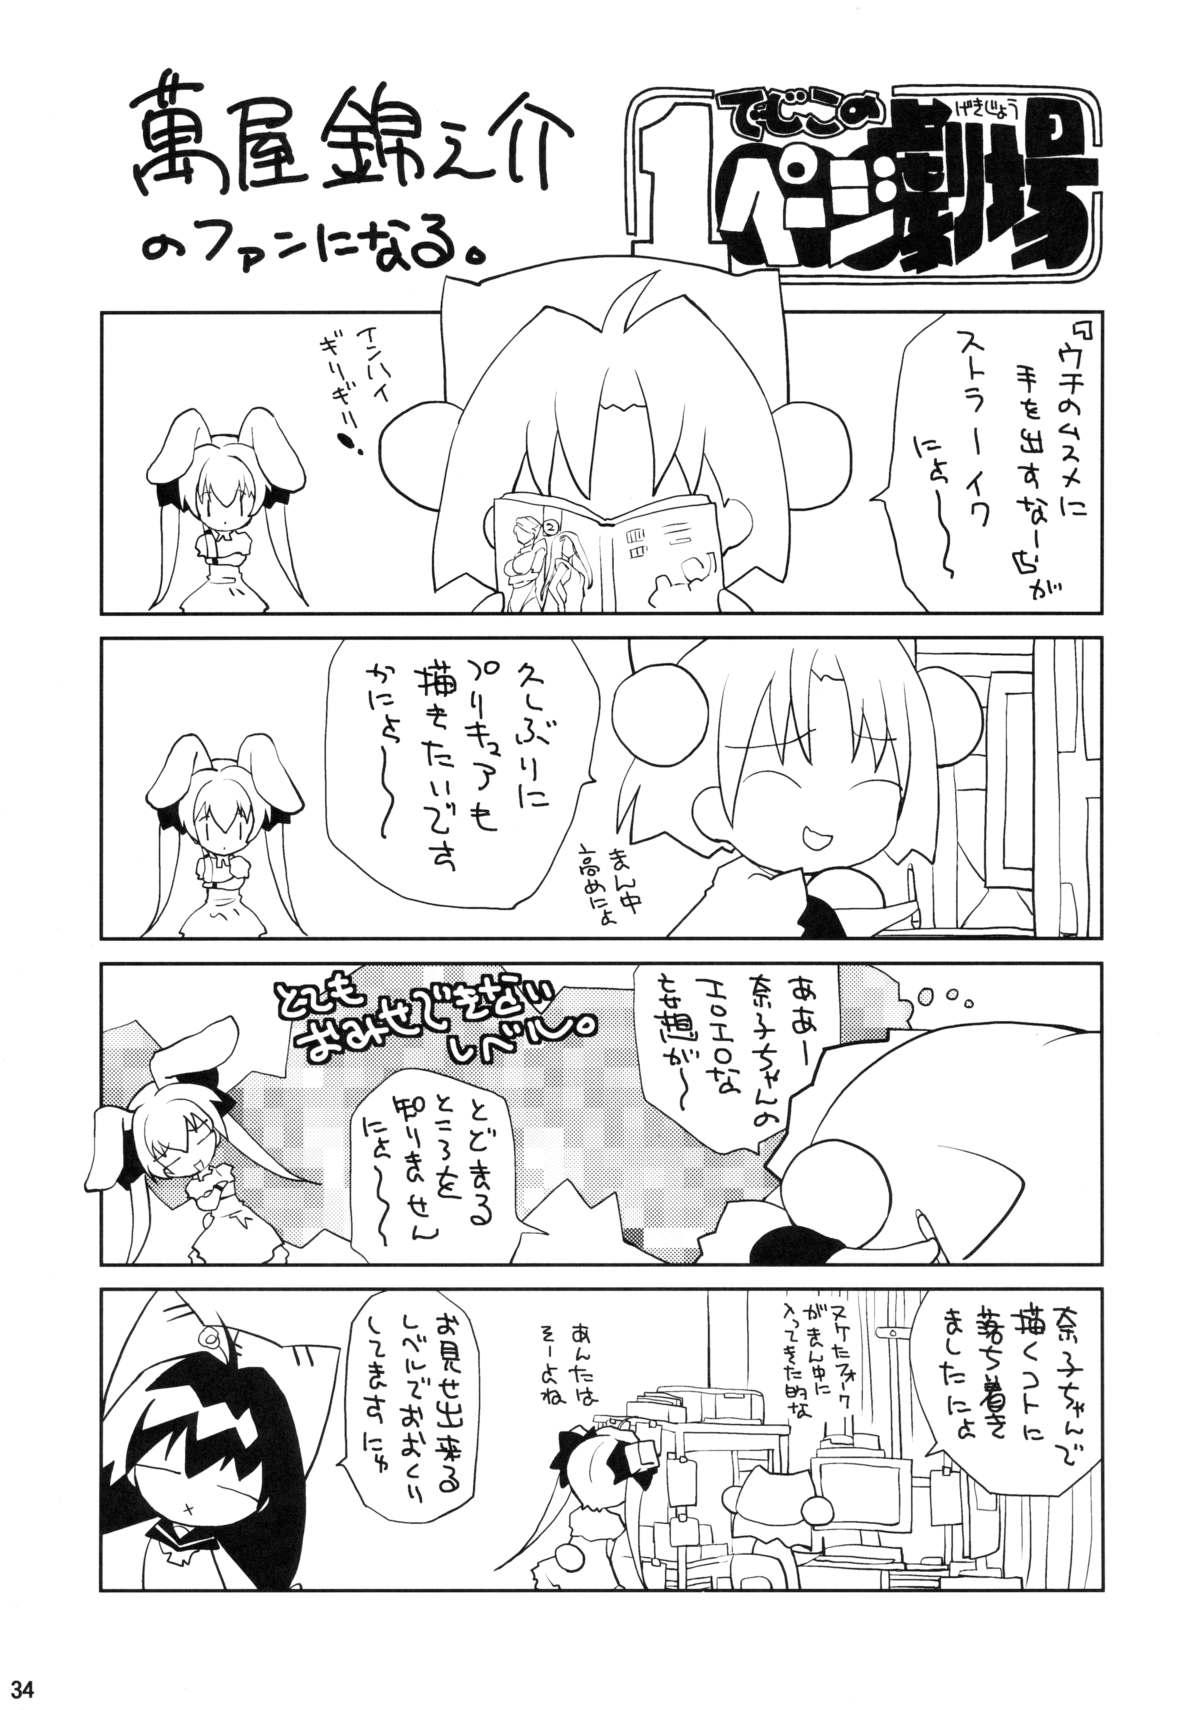 Cartoon Mujaki no Darakuen 2-jikanme - Mujaki no rakuen Stretching - Page 33